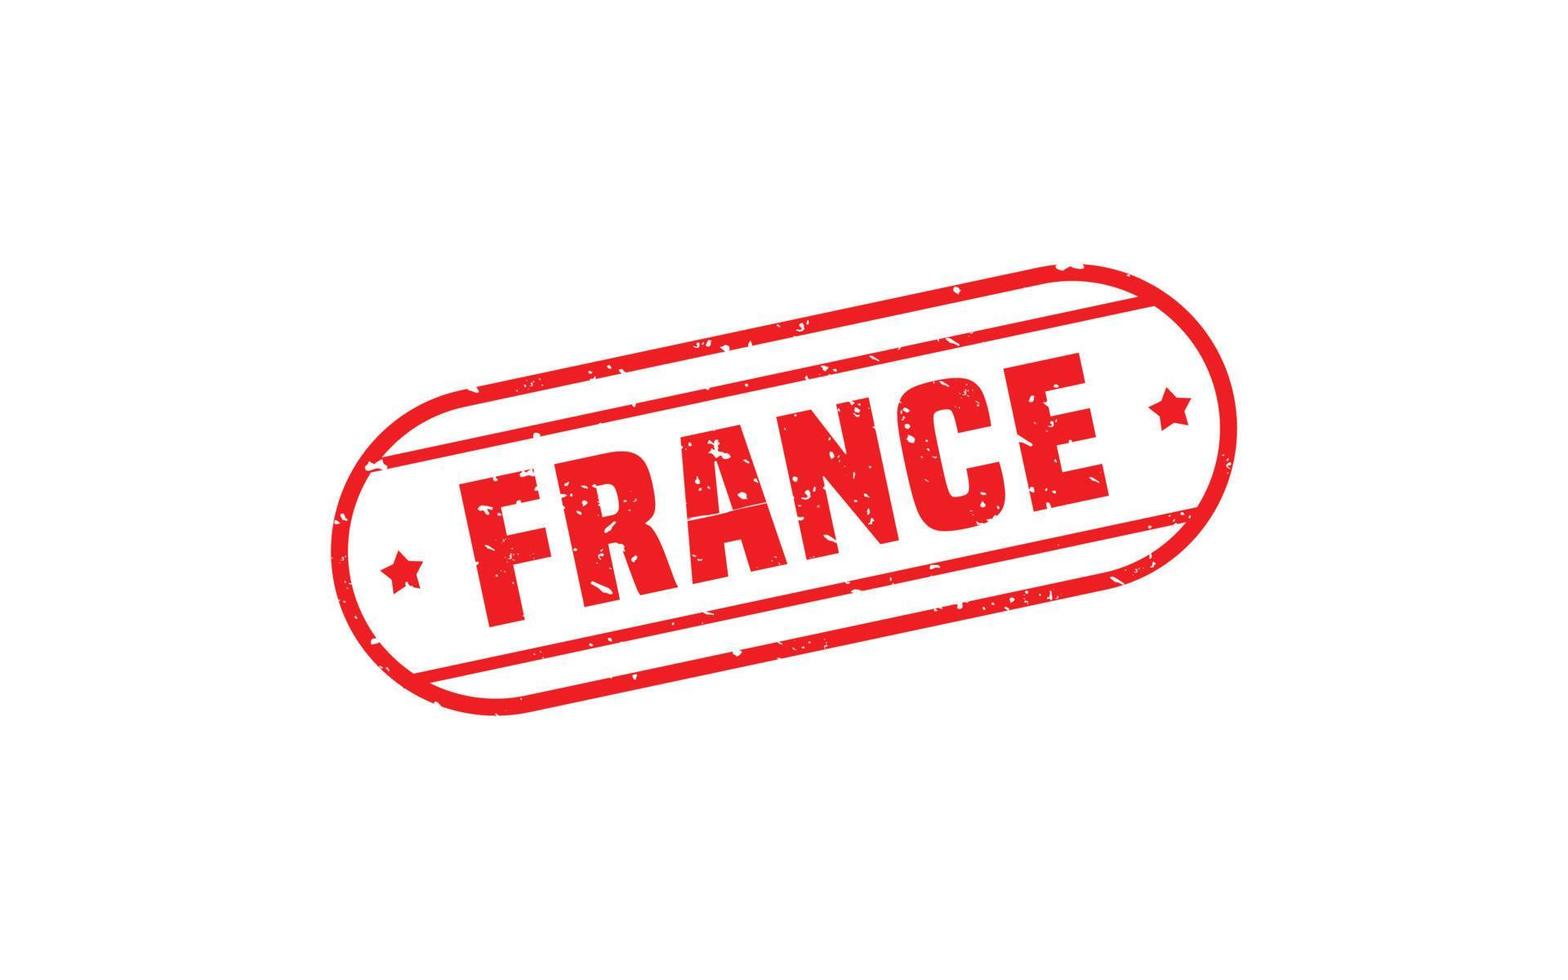 Caoutchouc de timbre de France avec style grunge sur fond blanc vecteur